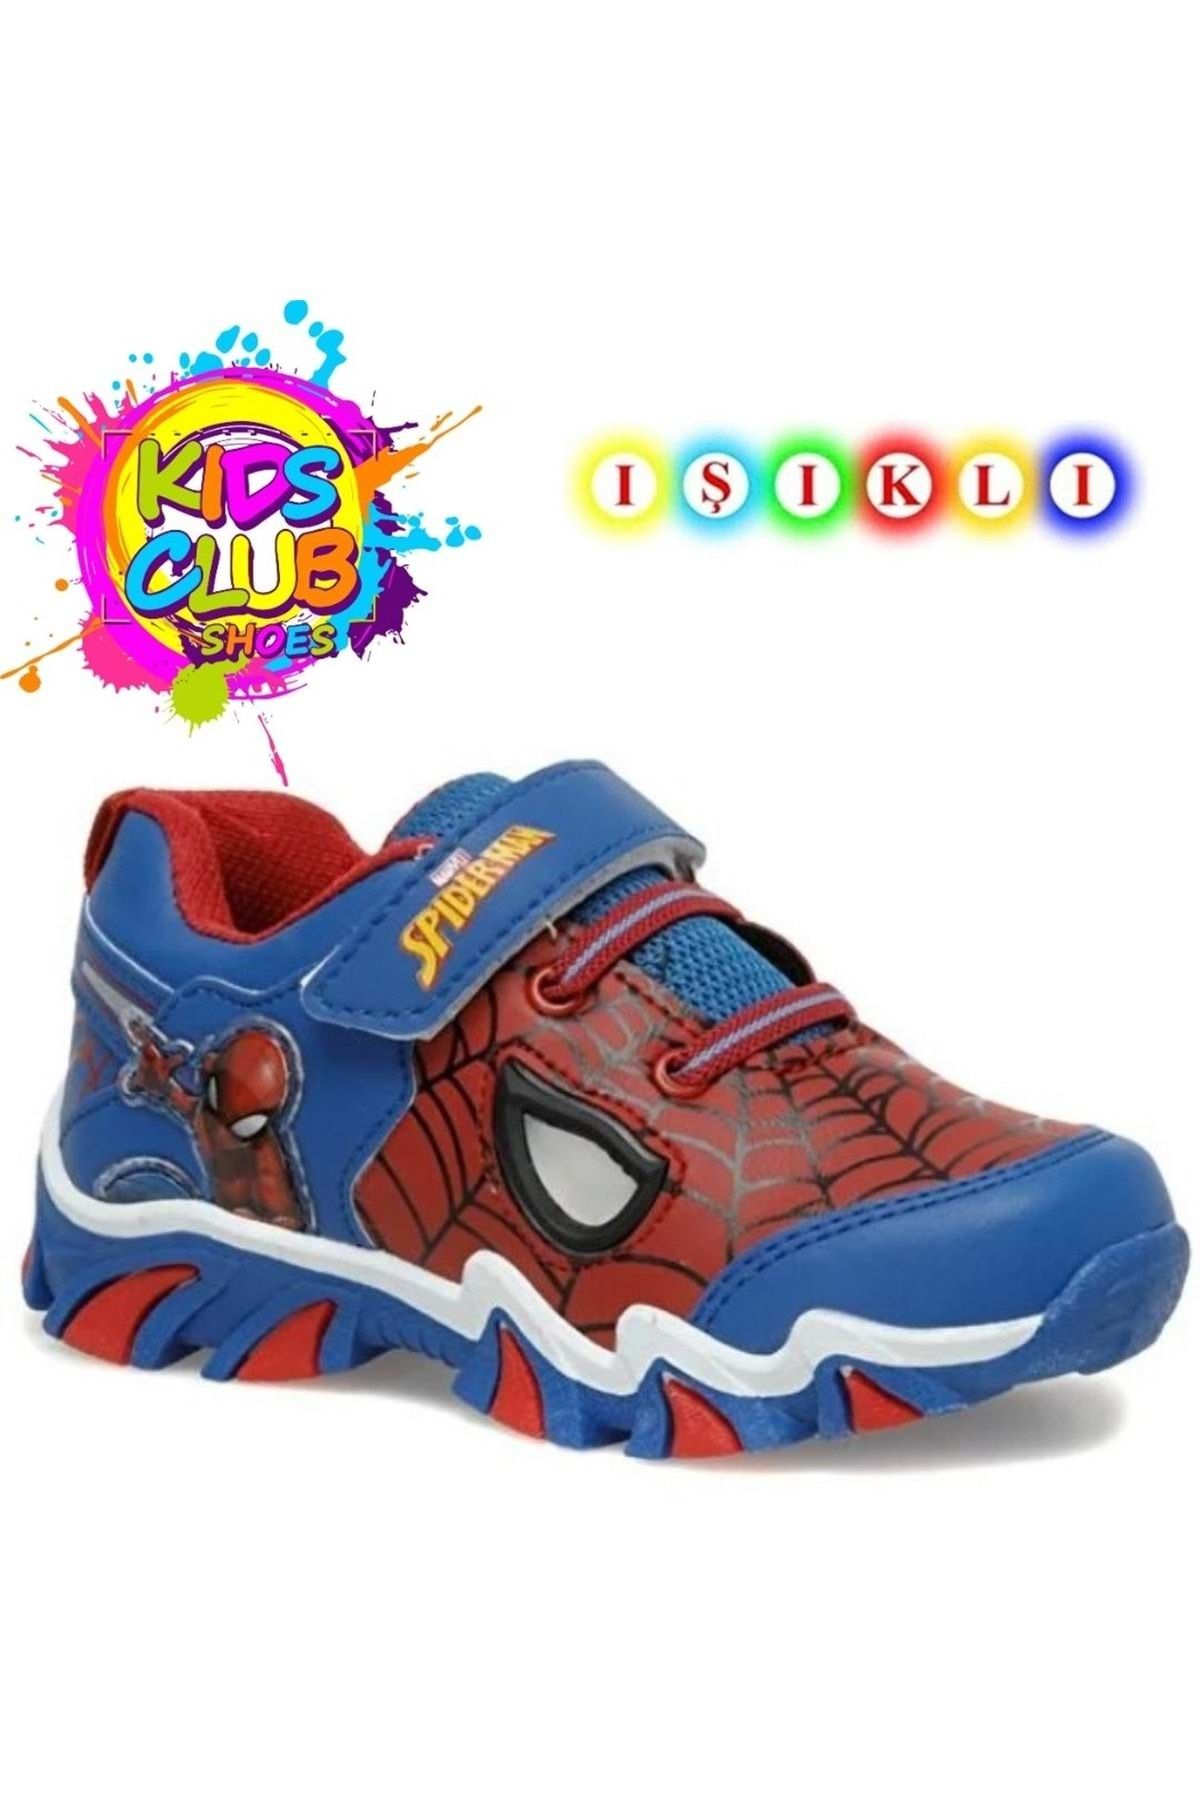 Spiderman Masko Ortopedik Işıklı Çocuk Spor Ayakkabı Mavi